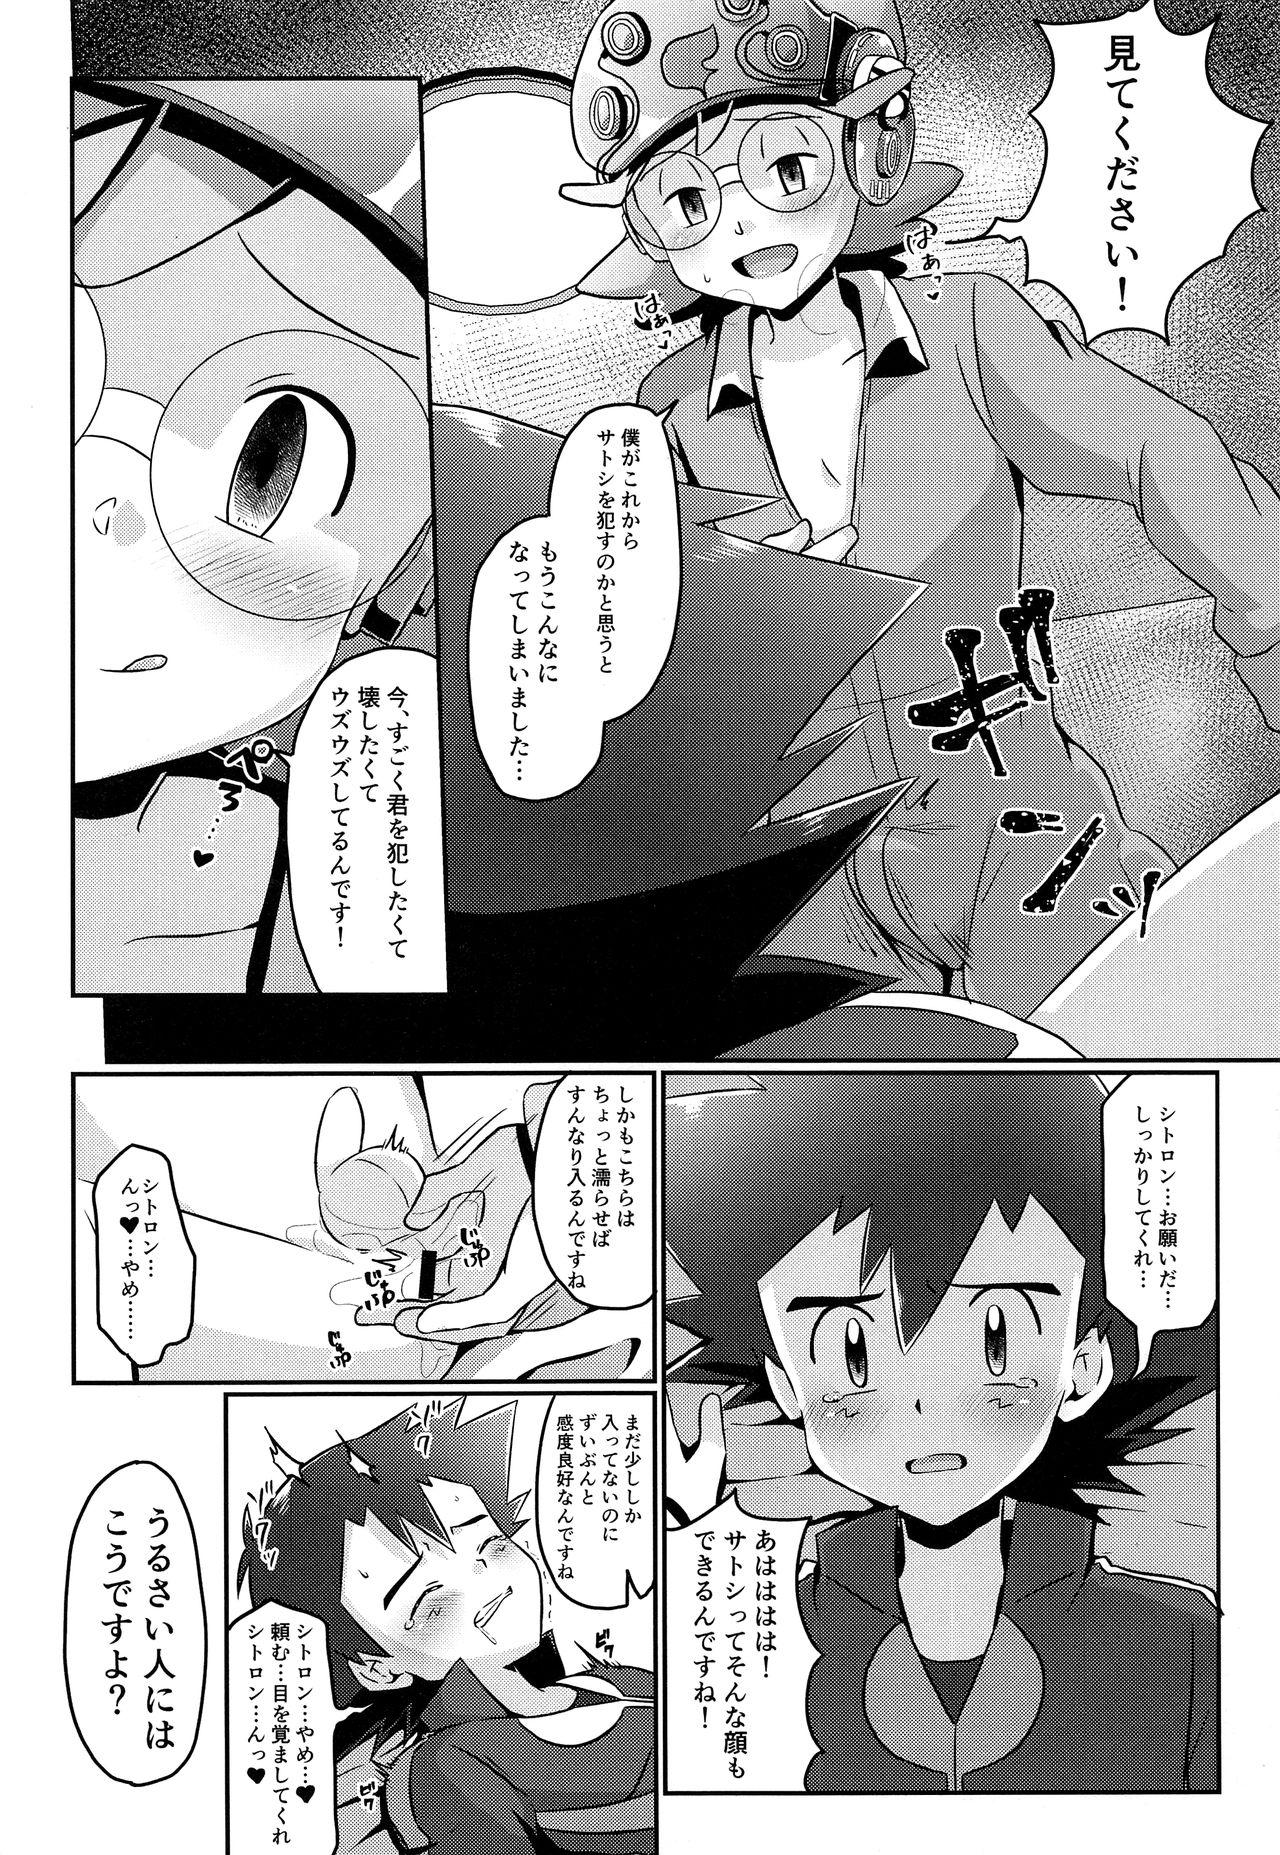 Goth Satoshi to Citron! Tachimukau 2tsu no Kokoro! - Pokemon 18 Year Old - Page 11